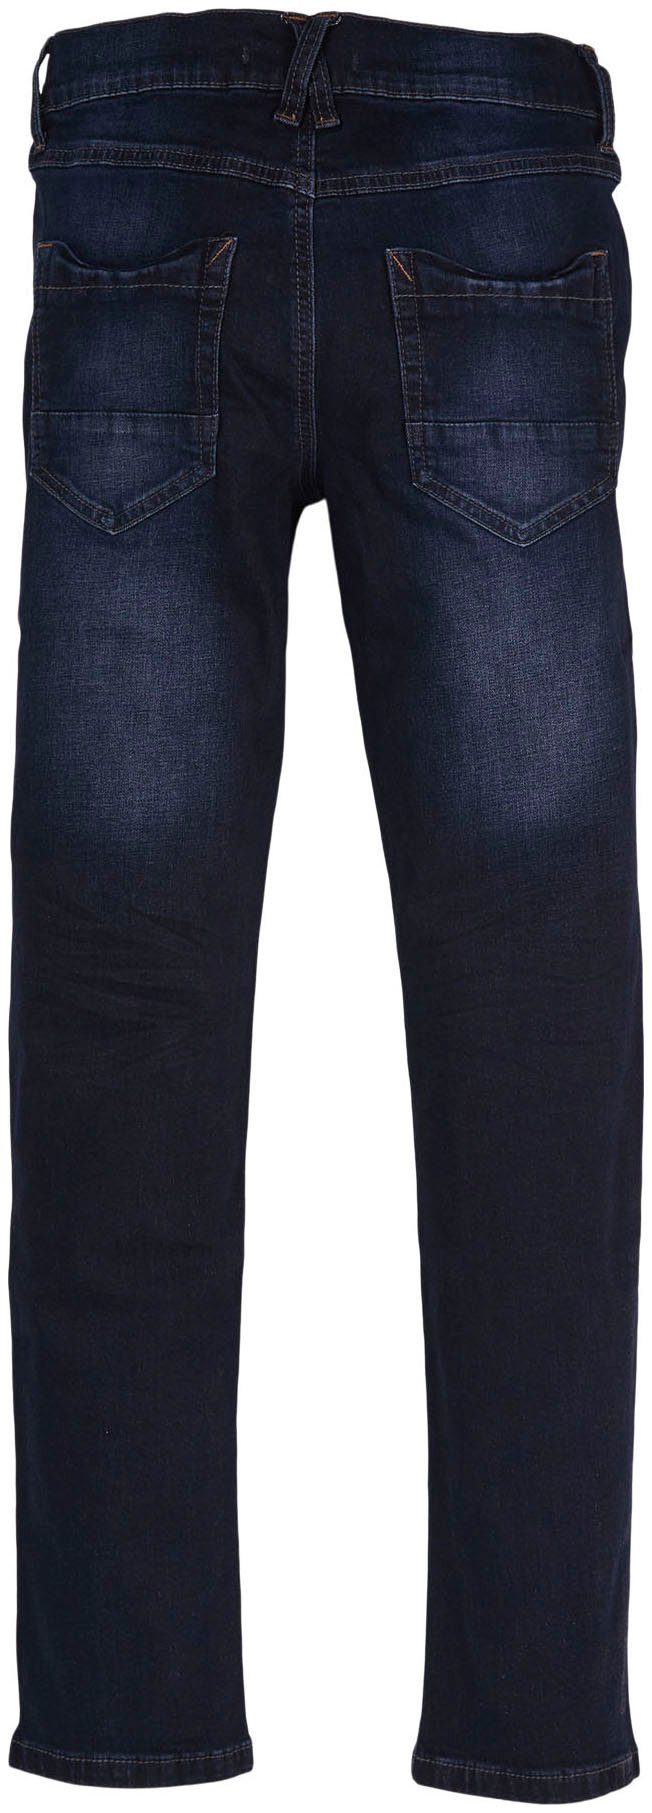 mit Skinny-fit-Jeans, s.Oliver Baumwollmischung Junior Elasthan-Anteil